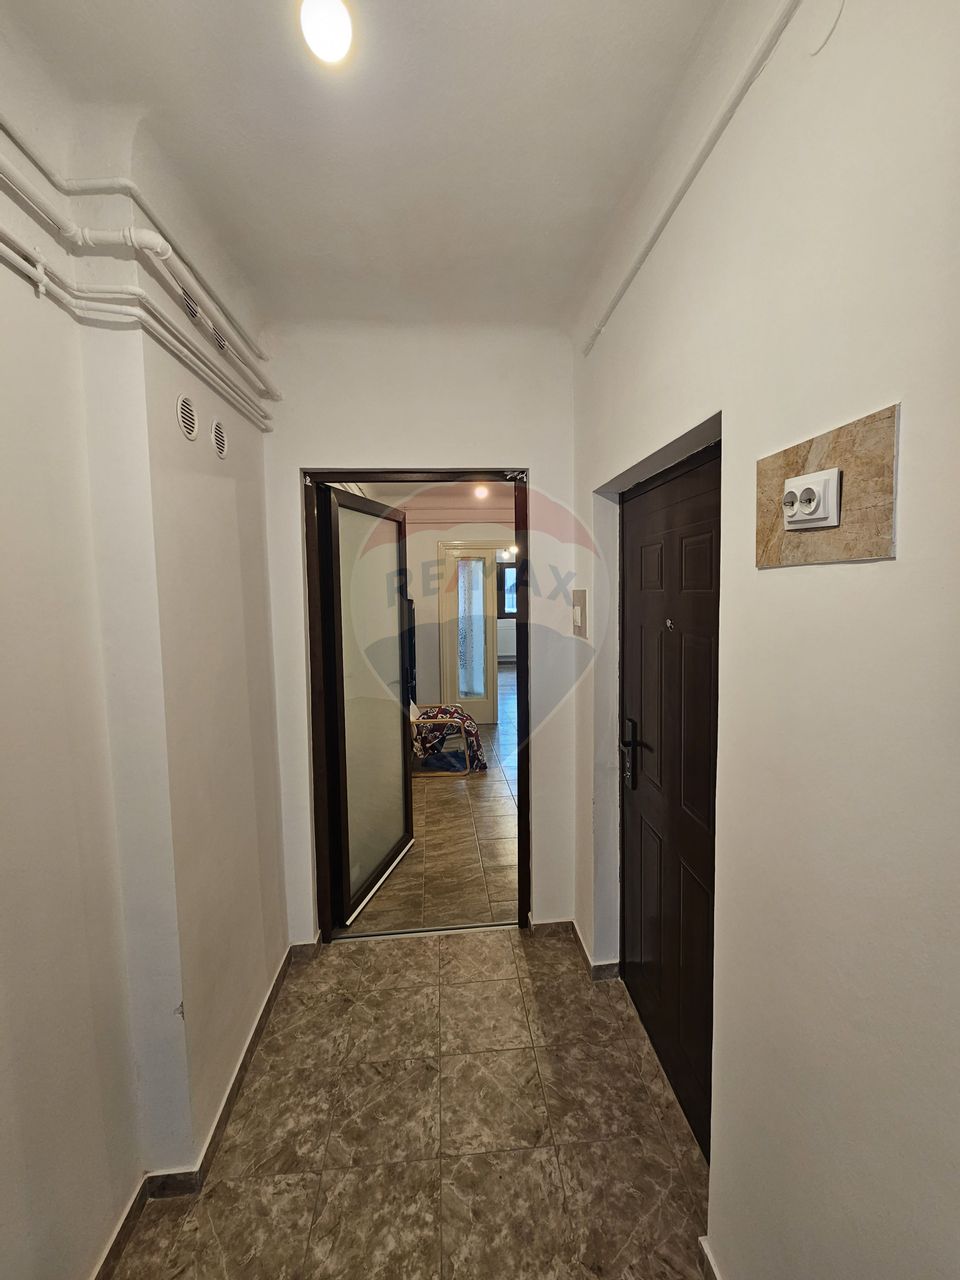 Apartament 2 camere in Vila S+P+2+M si curte proprie 29.21 mp